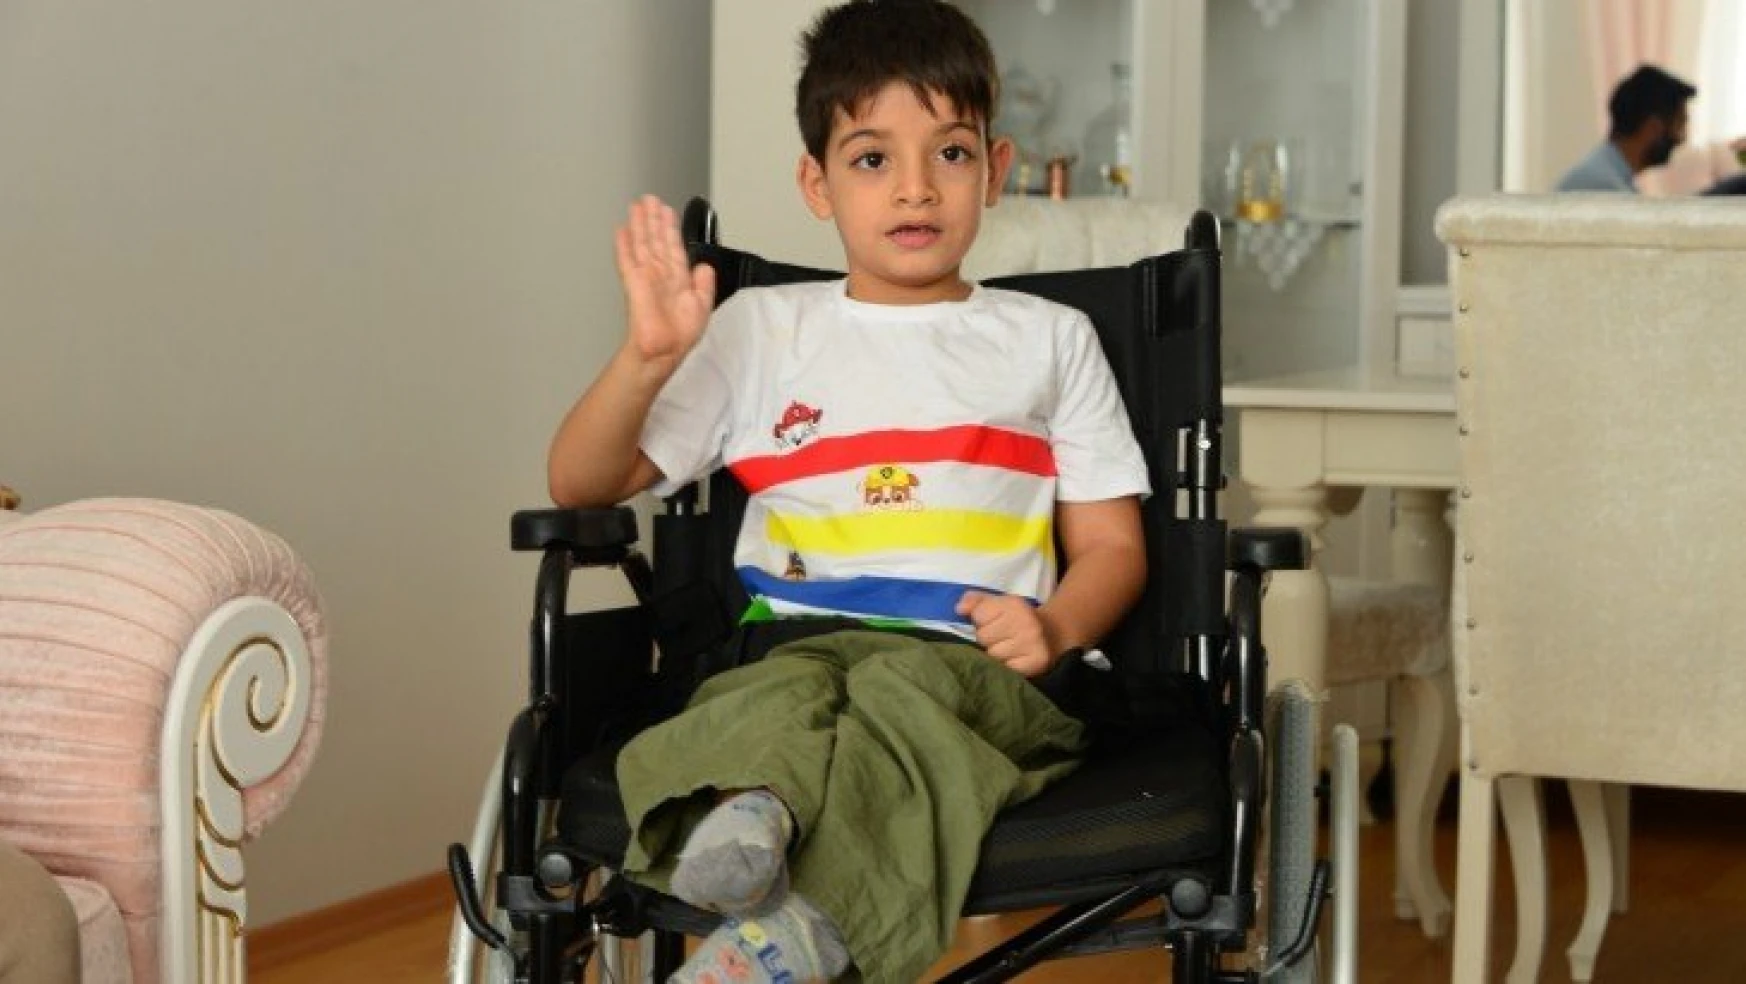 Sosyal medyadaki tekerlekli sandalye çağrısına Başkan Çınar duyarsız kalmadı